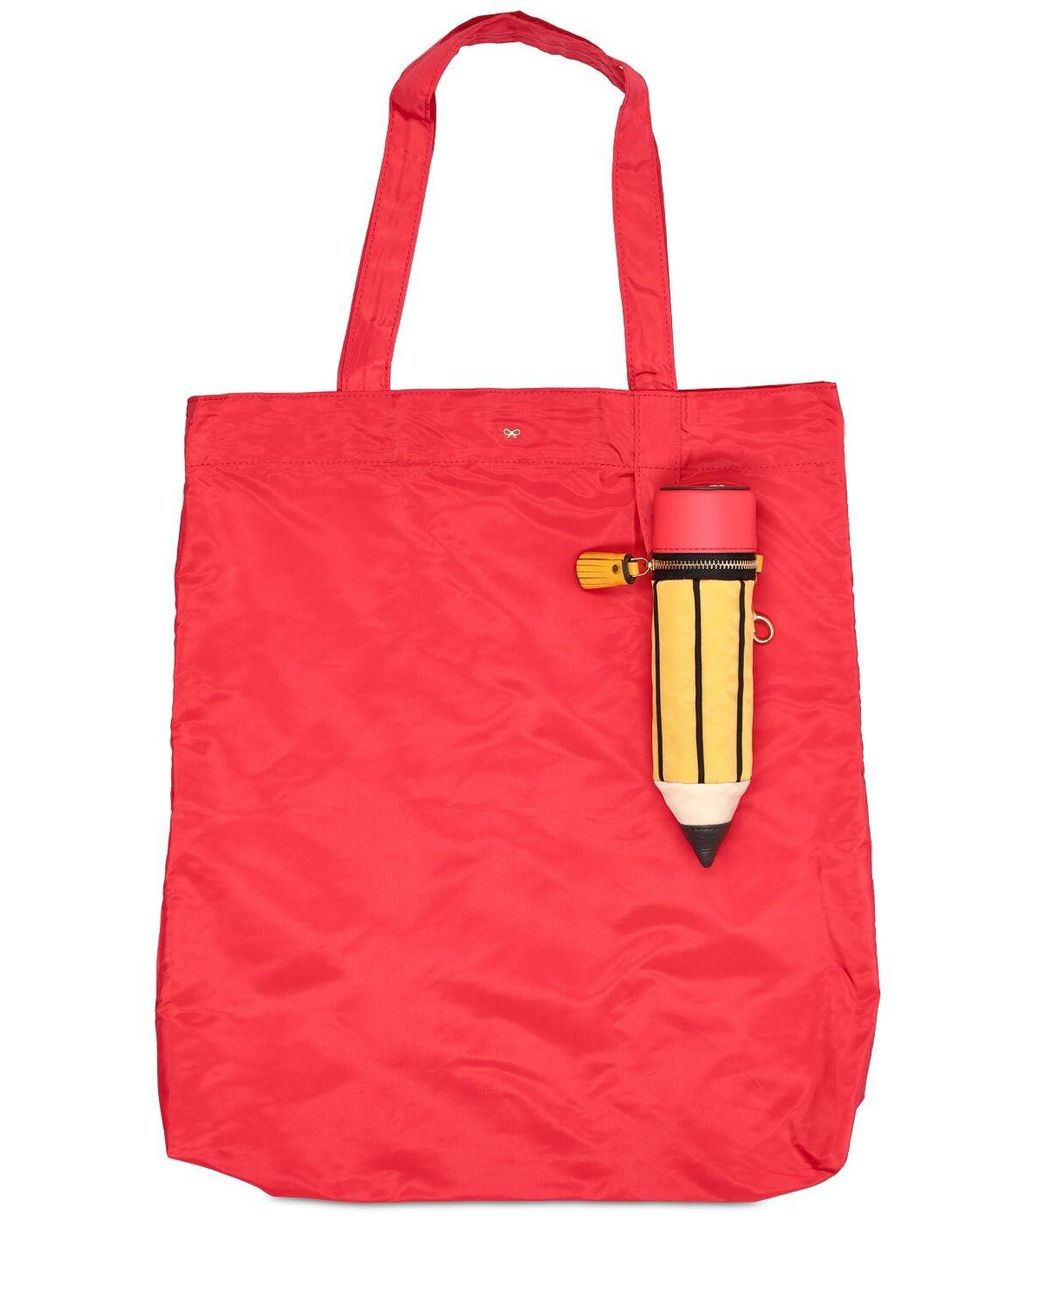 Damen Taschen Taschen-Accessoires Anya Hindmarch Net Sustain Leinenanhänger Aus Econyl® Mit Lederbesätzen in Braun 